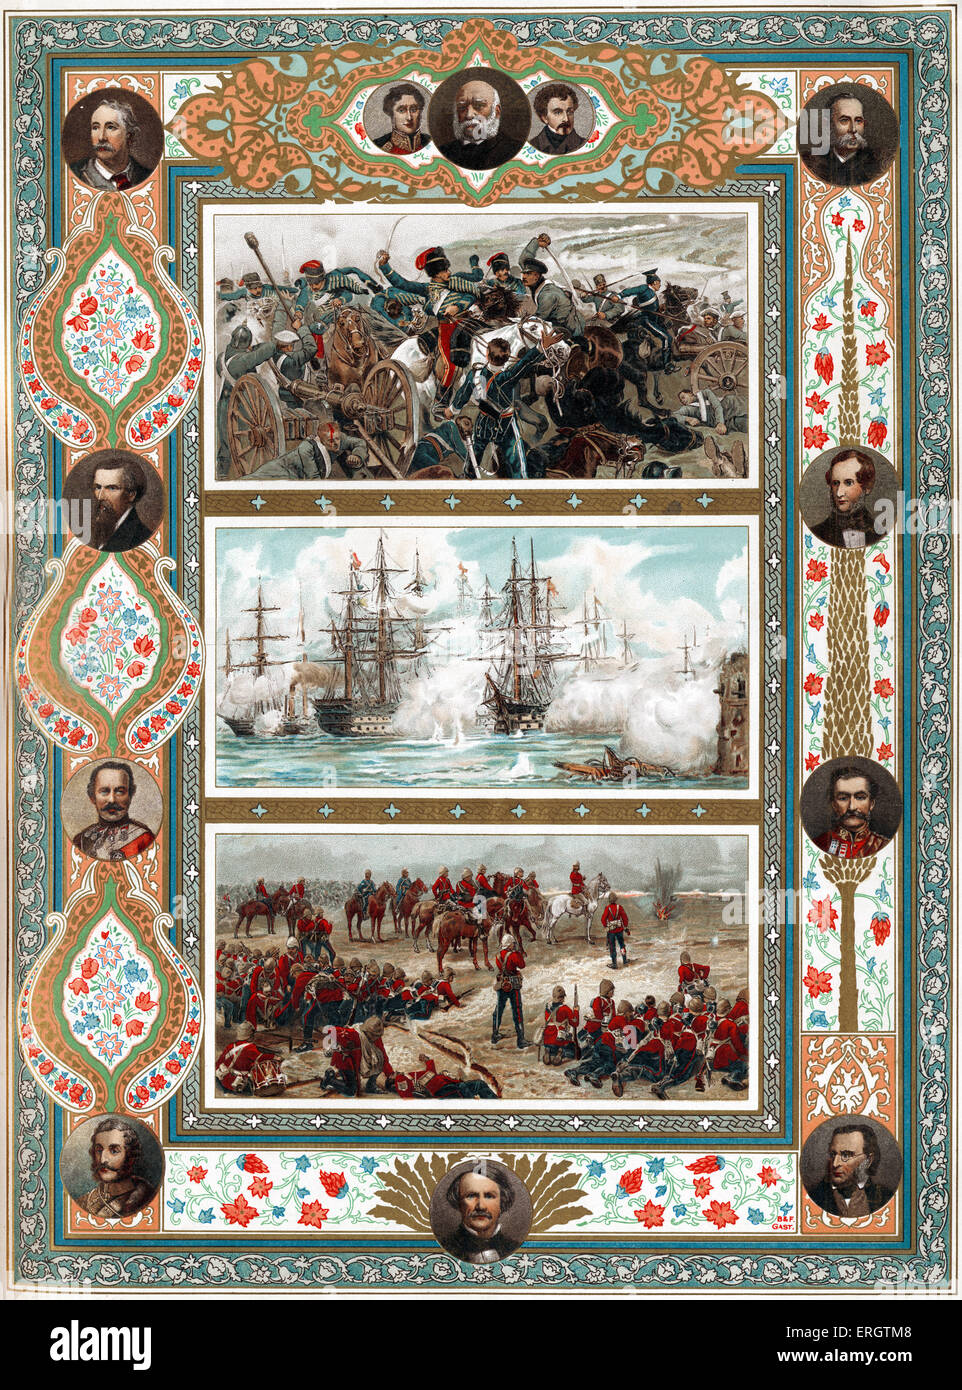 Conflictos de la era Victoriana - Batalla de Inkerman, Guerra de Crimea, el 5 de noviembre de 1854 (arriba), el bombardeo de Sebastopol, la guerra de Crimea, 17 Foto de stock